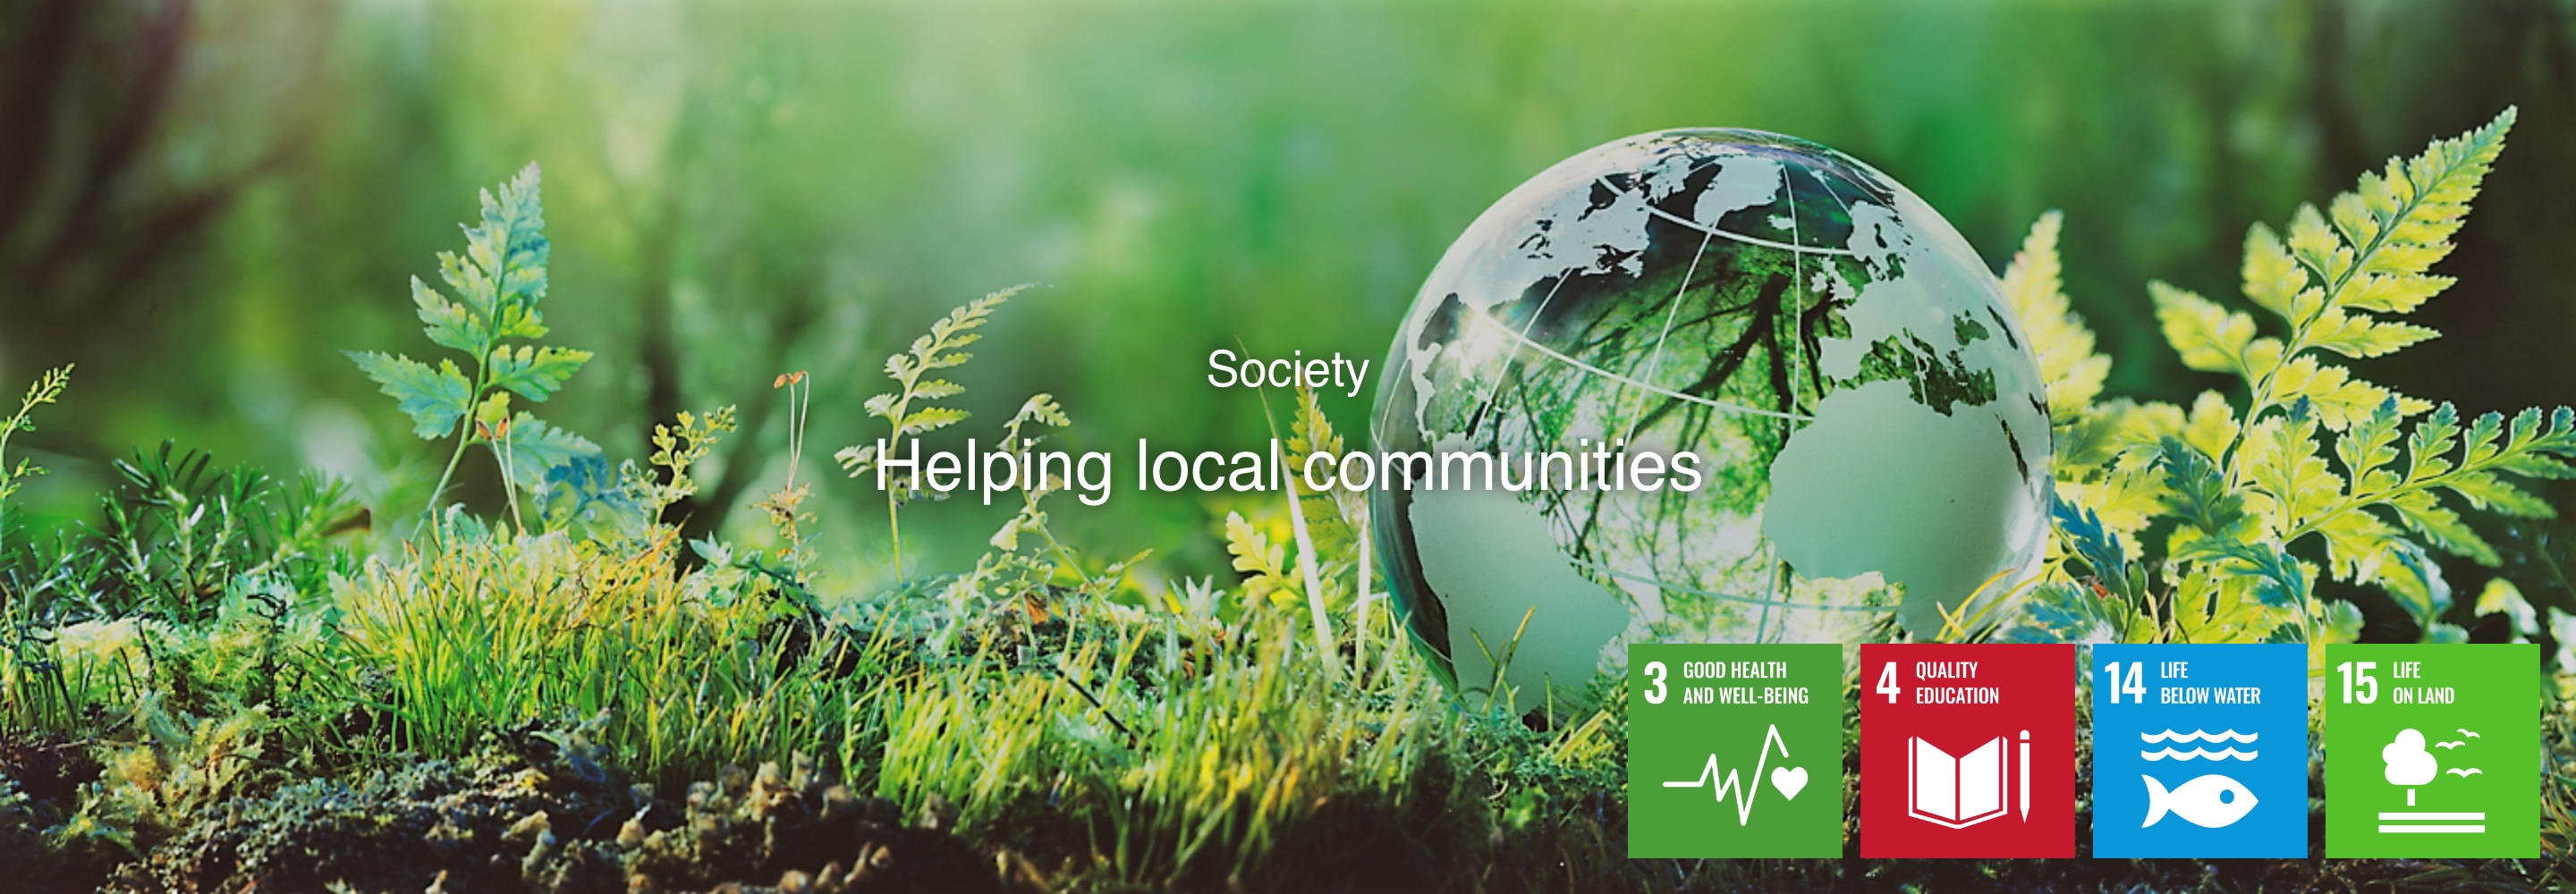 Sociedade Apoiar as comunidades locais